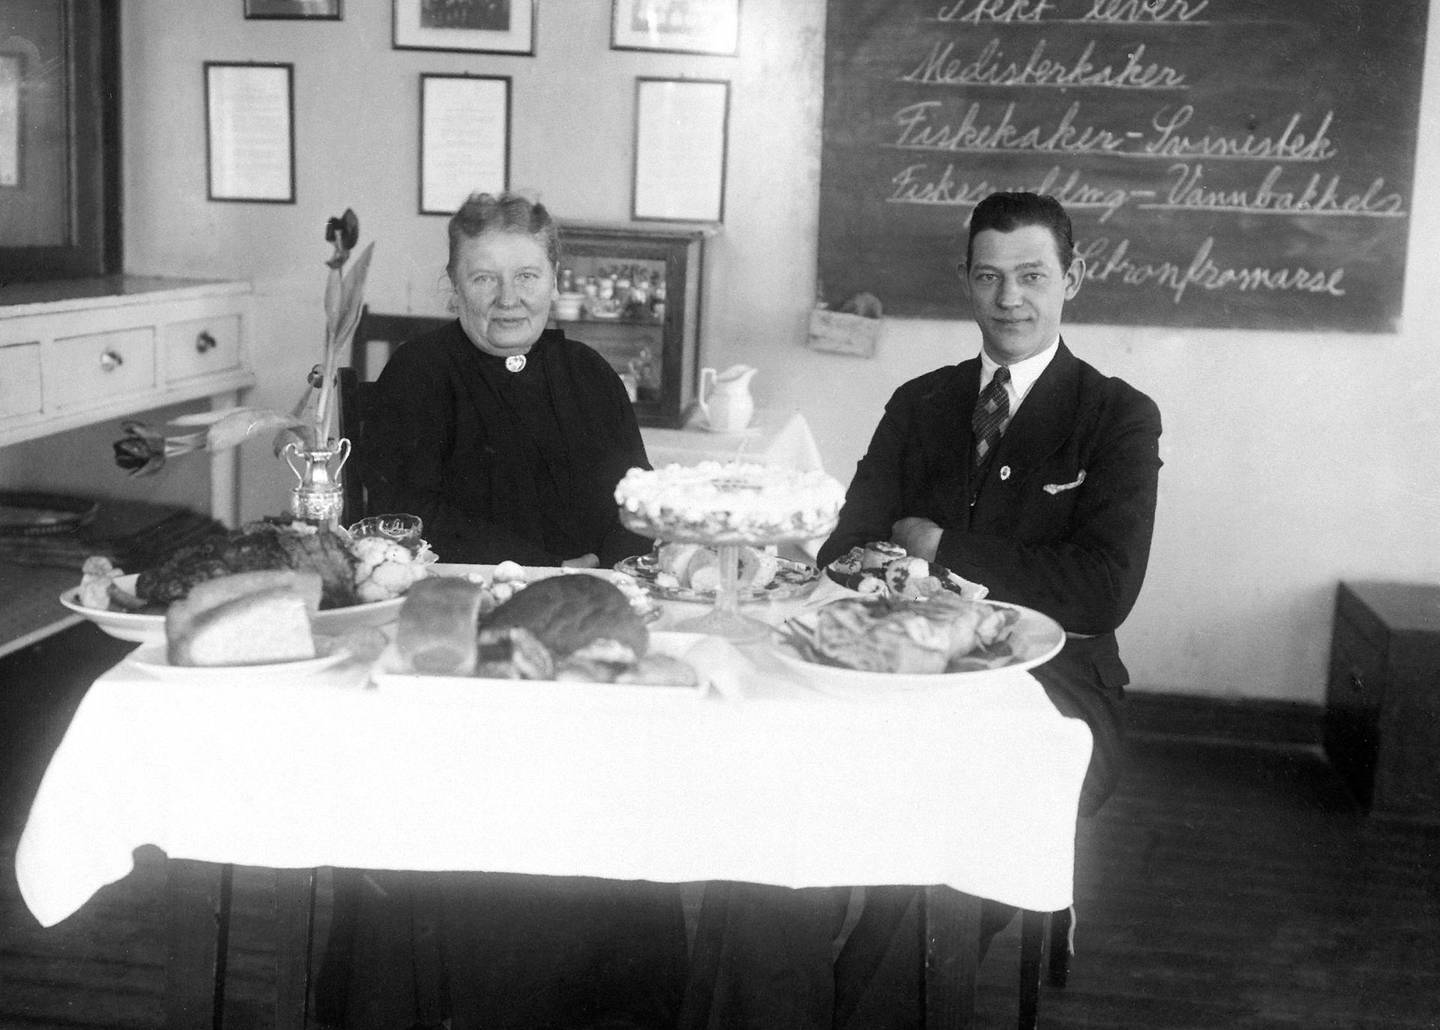 Henriette Schønberg Erken med bestyrer John Hannevig Olsen. Schønberg Erken viste frem kokkekunsten, med beskrivelser bak på tavlen som «Fiskekaker - Svinestek» og «Fiskepudding - Vannbakkels». FOTO: ANNO DOMKIRKEODDEN